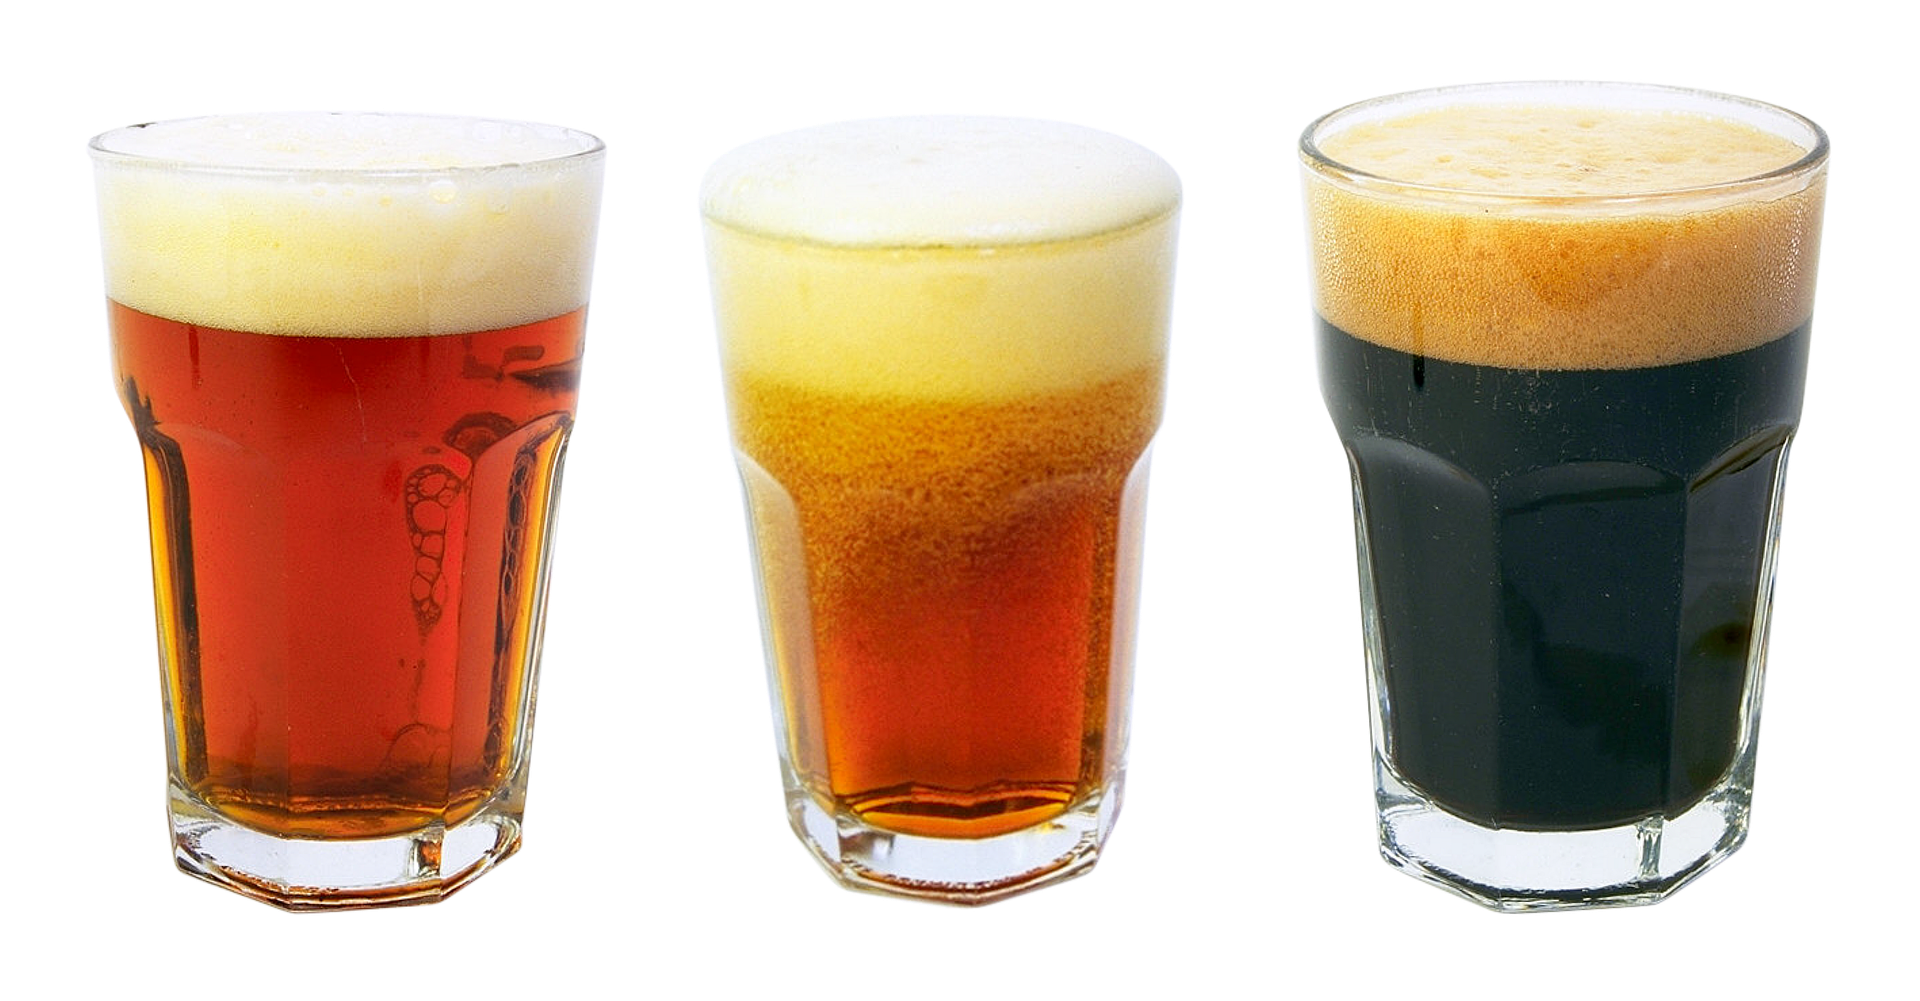 Viele glauben der Ursprung des Bieres liegt in Deutschland, doch stimmt das? Bildquelle: pixabay.de